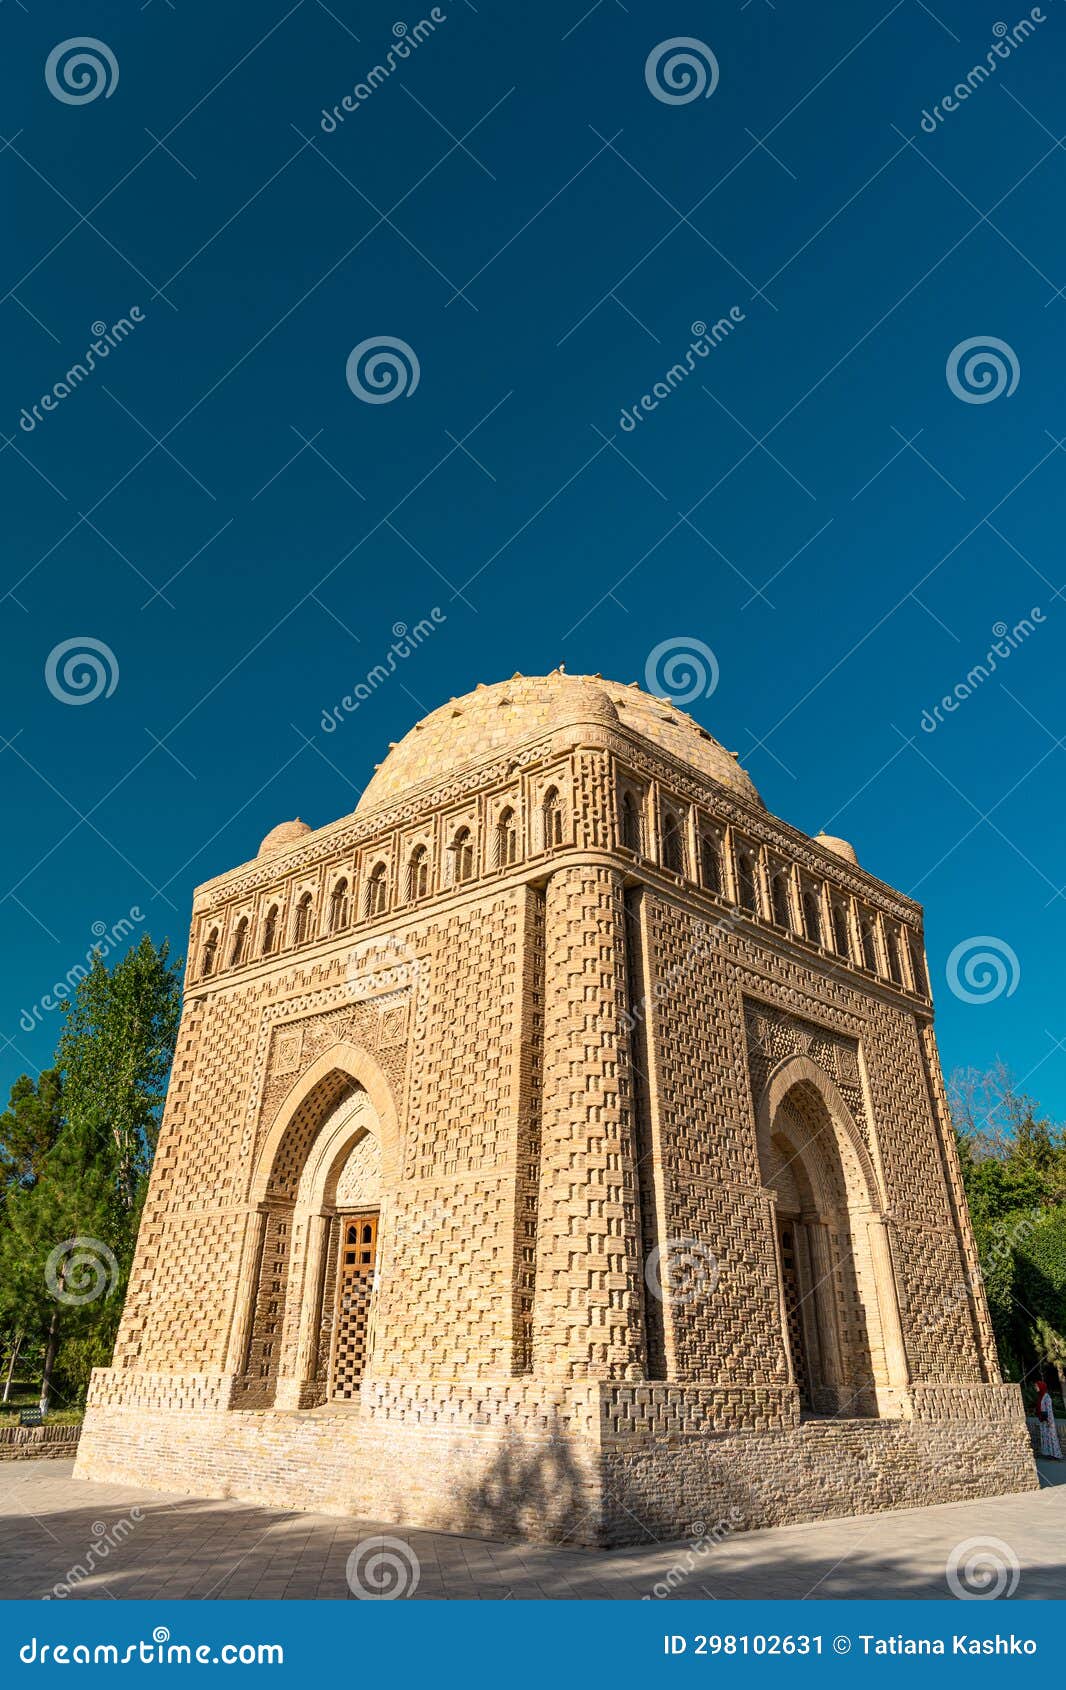 uzbekistan, bukhara, the mausoleum of ismmoil samoniy